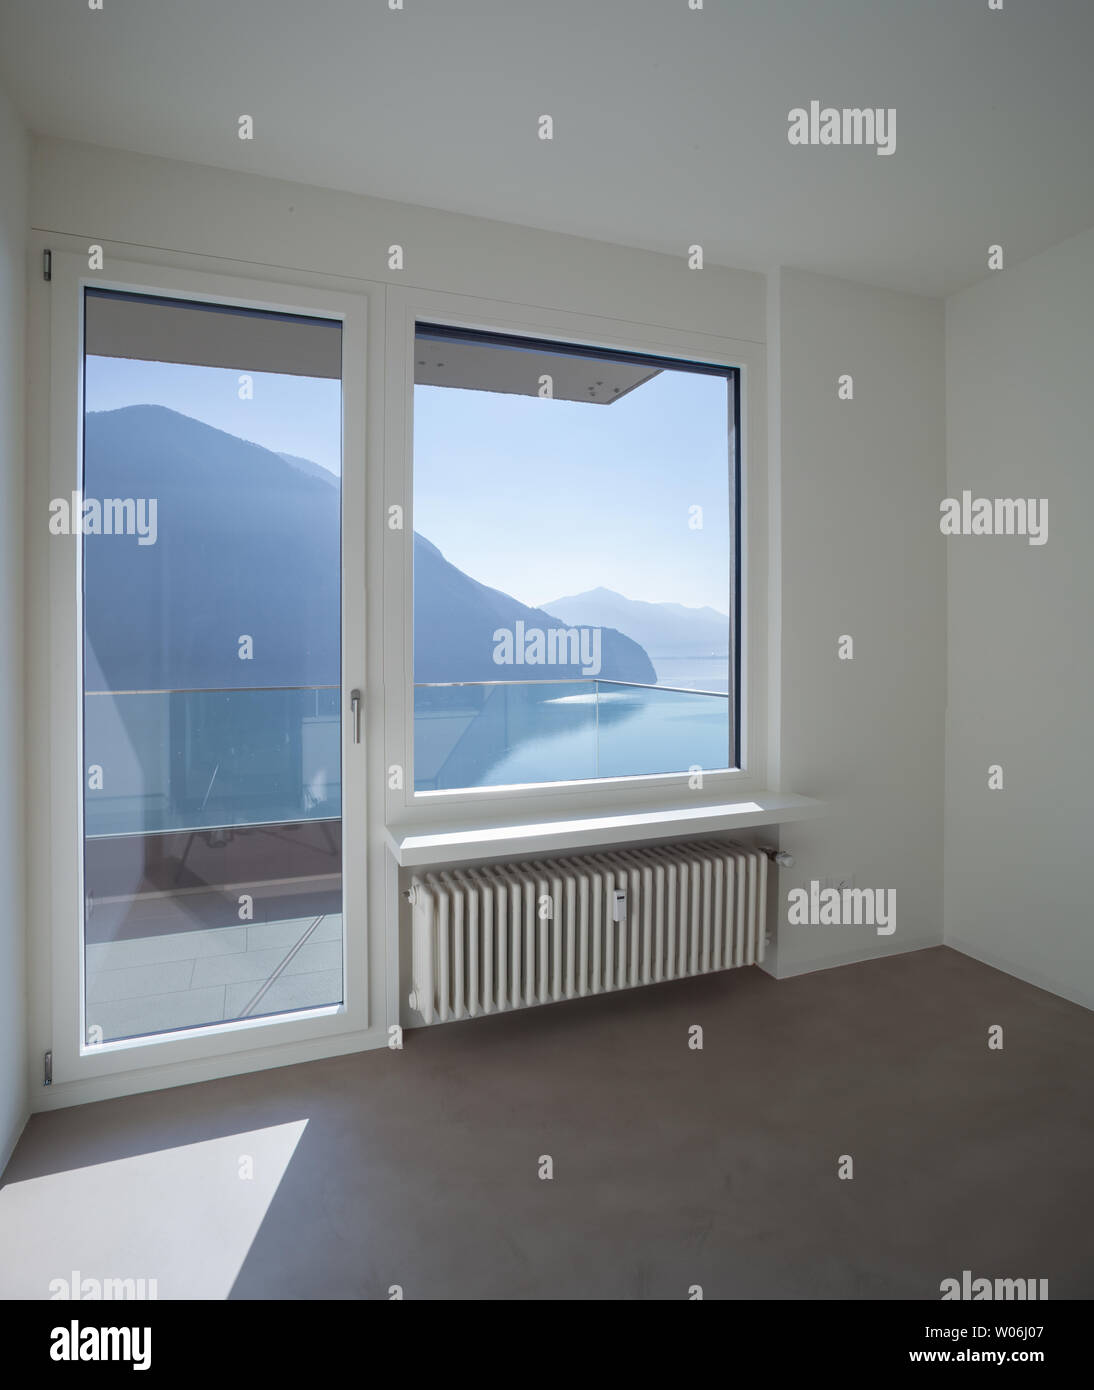 Salle vide dans la maison moderne, fenêtre avec paysage du lac Banque D'Images